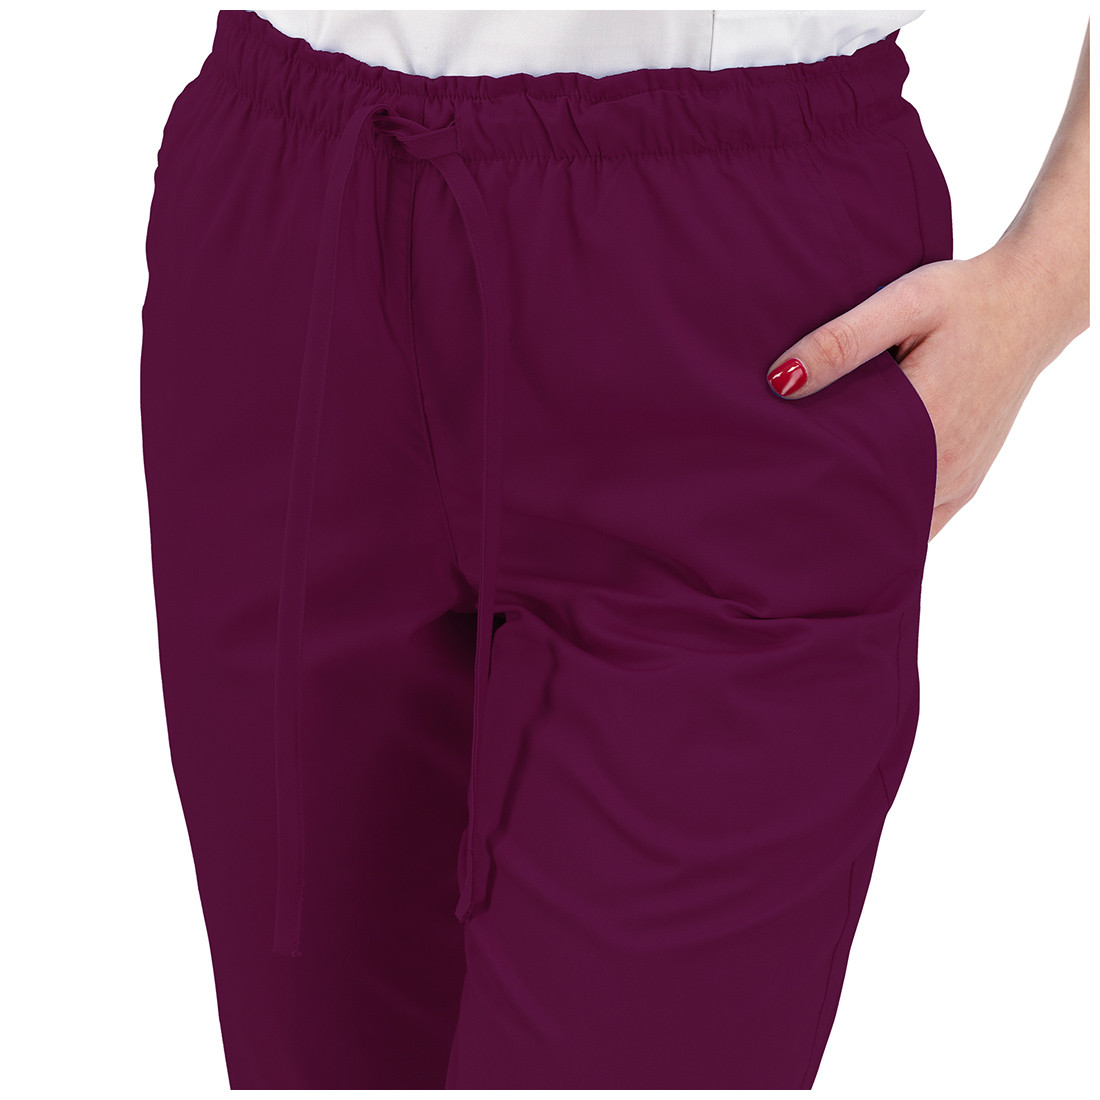 Pantaloni medicali unisex ALESSI - Abbigliamento di protezione